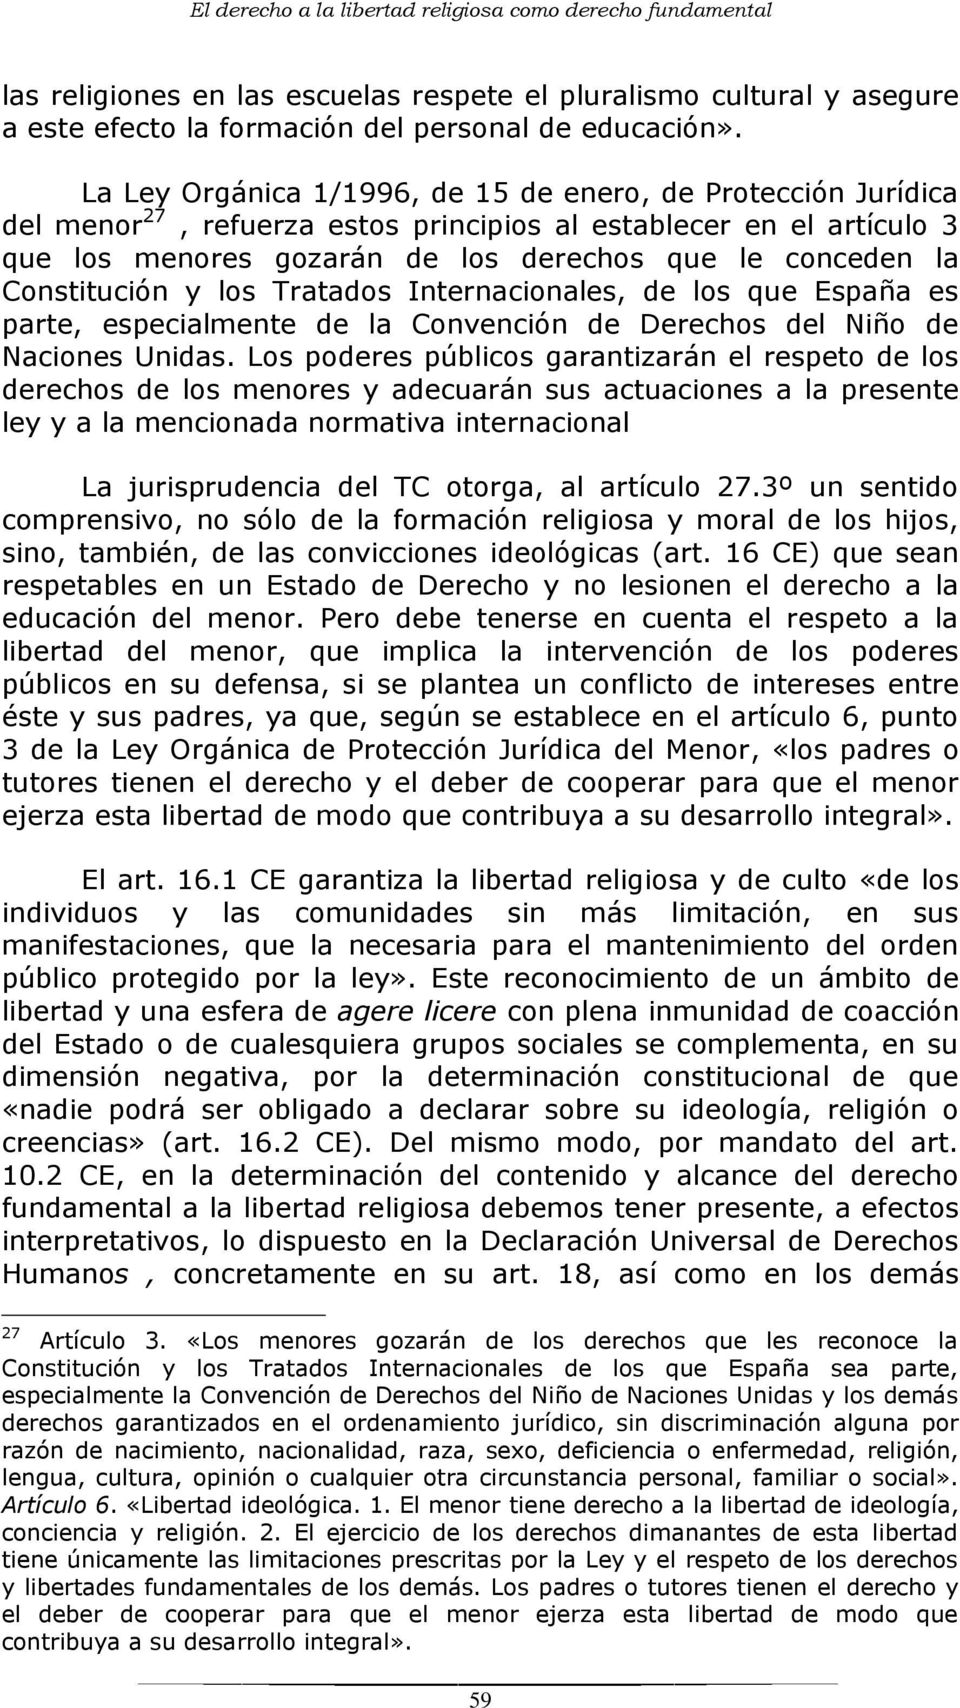 Constitución y los Tratados Internacionales, de los que España es parte, especialmente de la Convención de Derechos del Niño de Naciones Unidas.